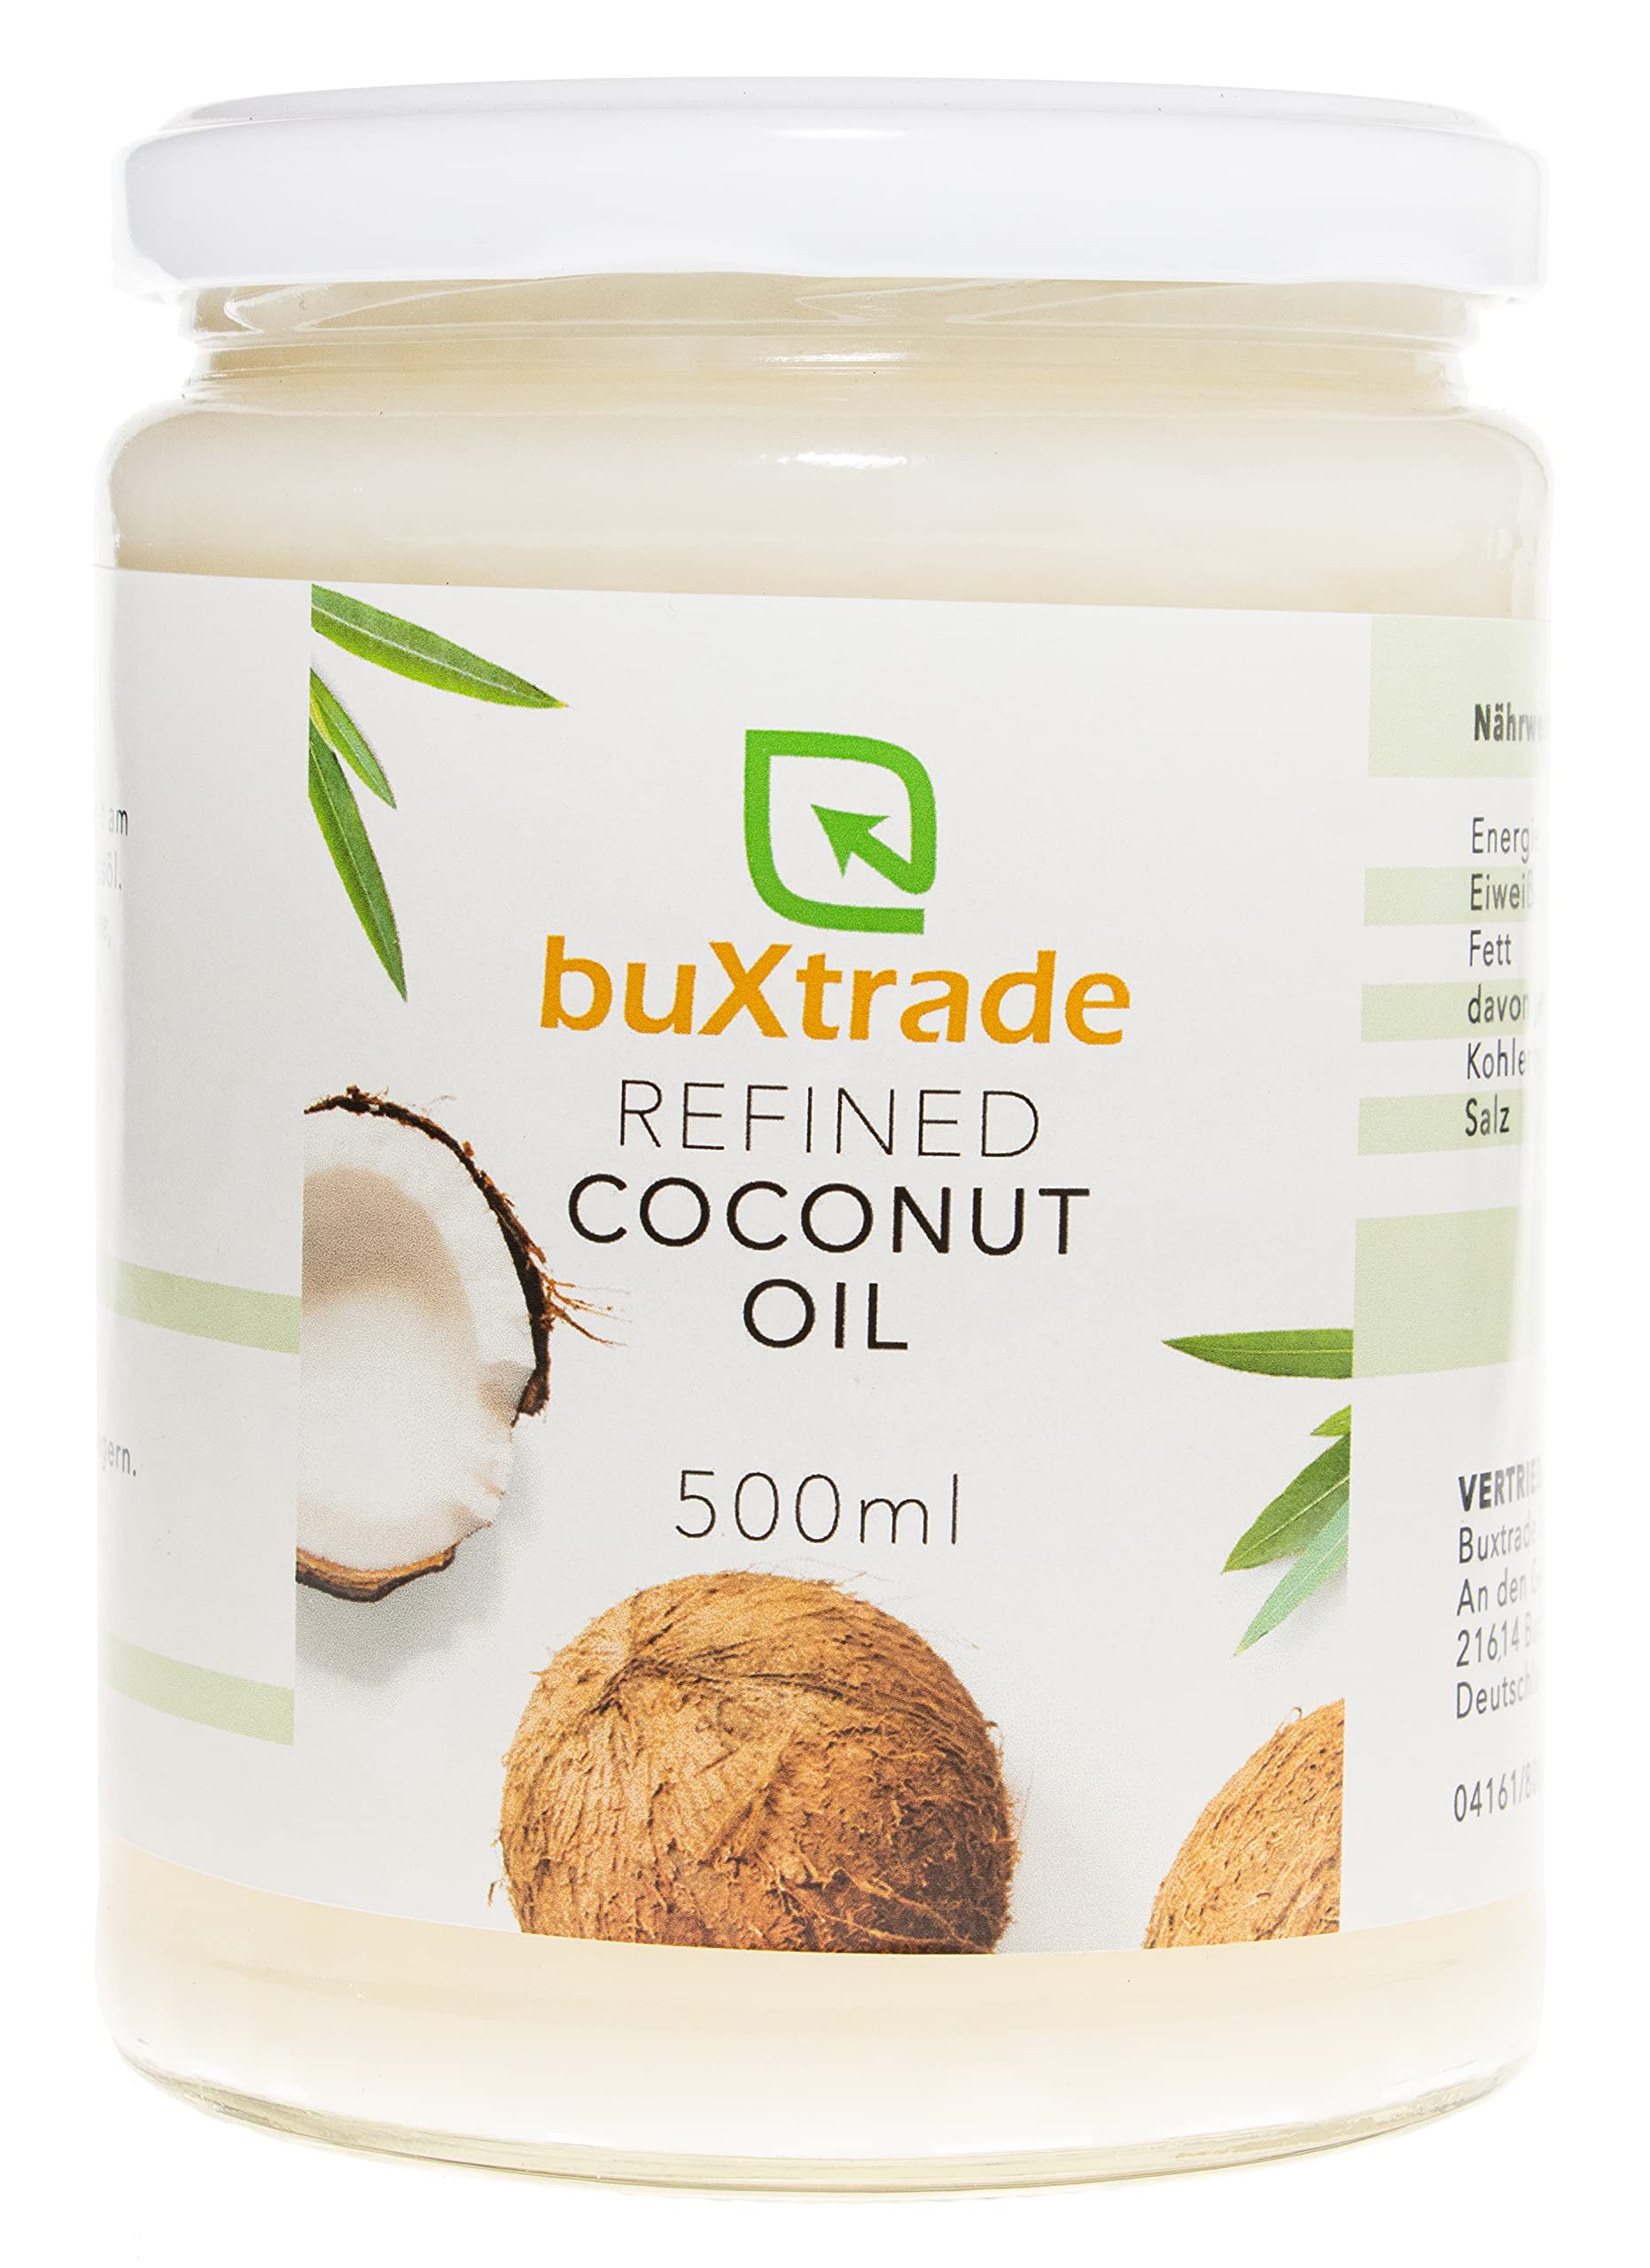 5 Gläser (5x500ml) Refined Coconut Oil - Kokosnussöl Öl Kochen Kokosnuss Kokosöl Kokosfett